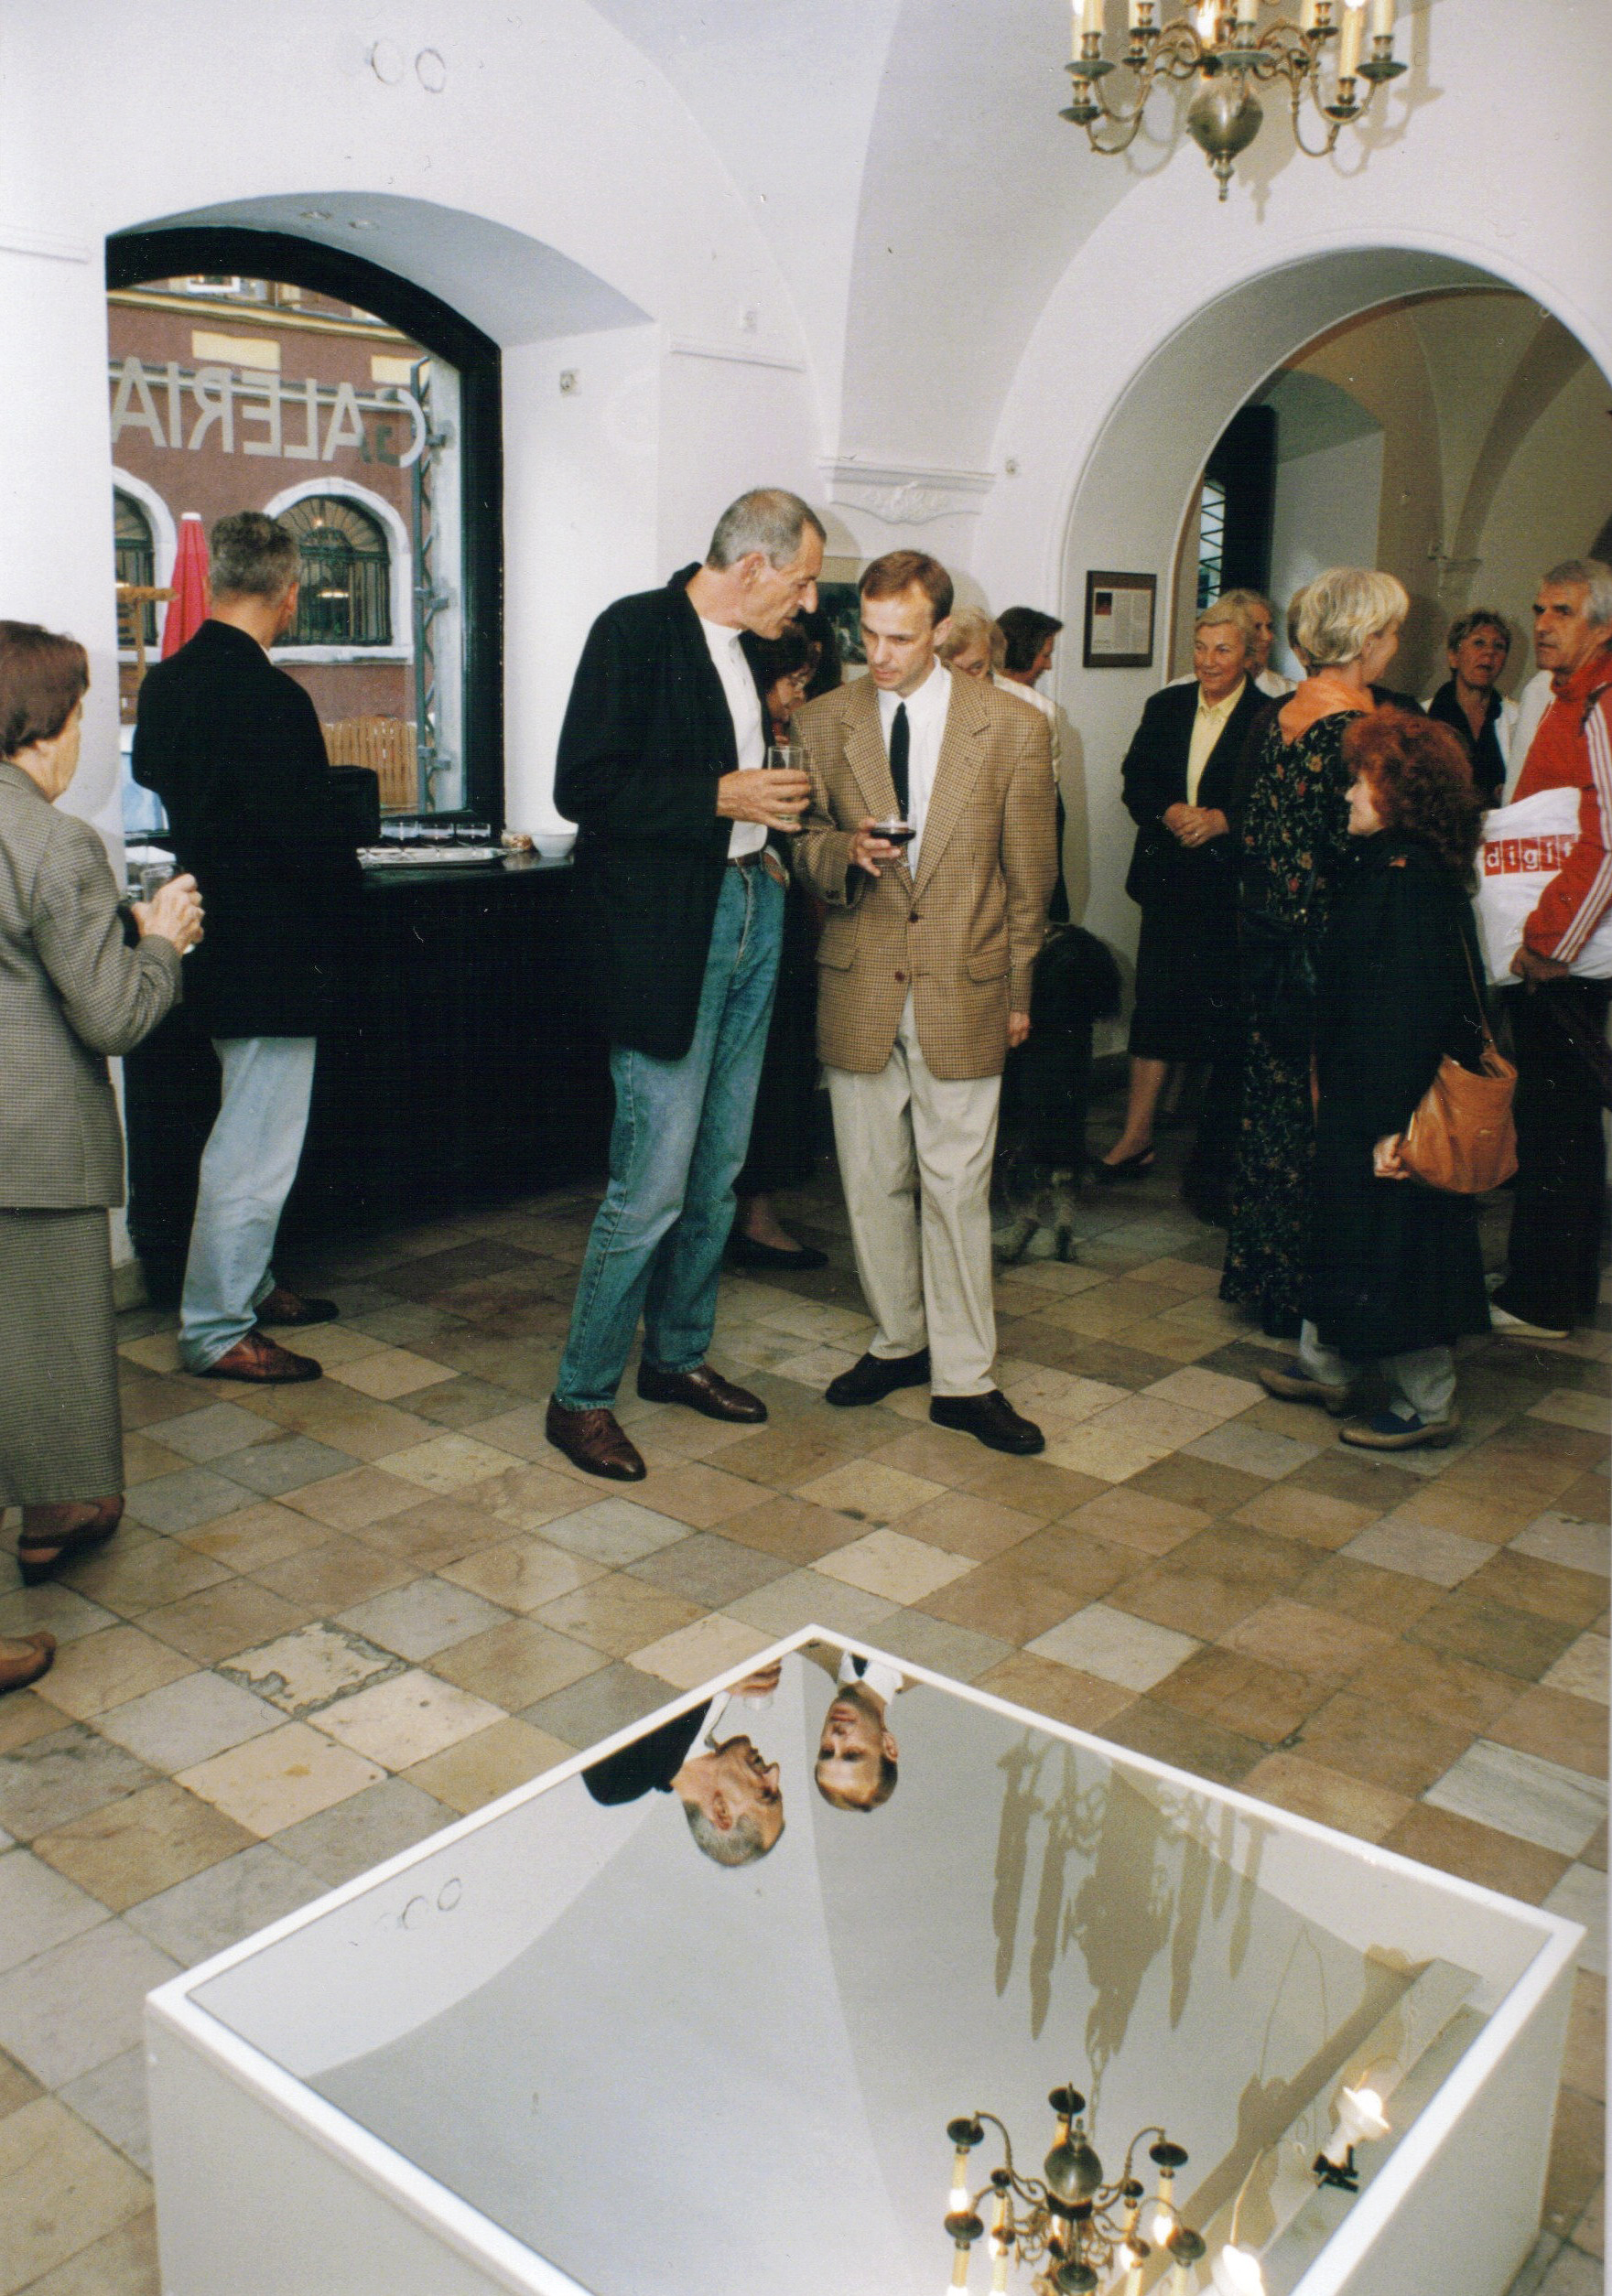 Indywidualna wystawa w Galerii Zapiecek - z Andrzejem Skoczylasem, red. naczelnym Sztuki, Warszawa 1996